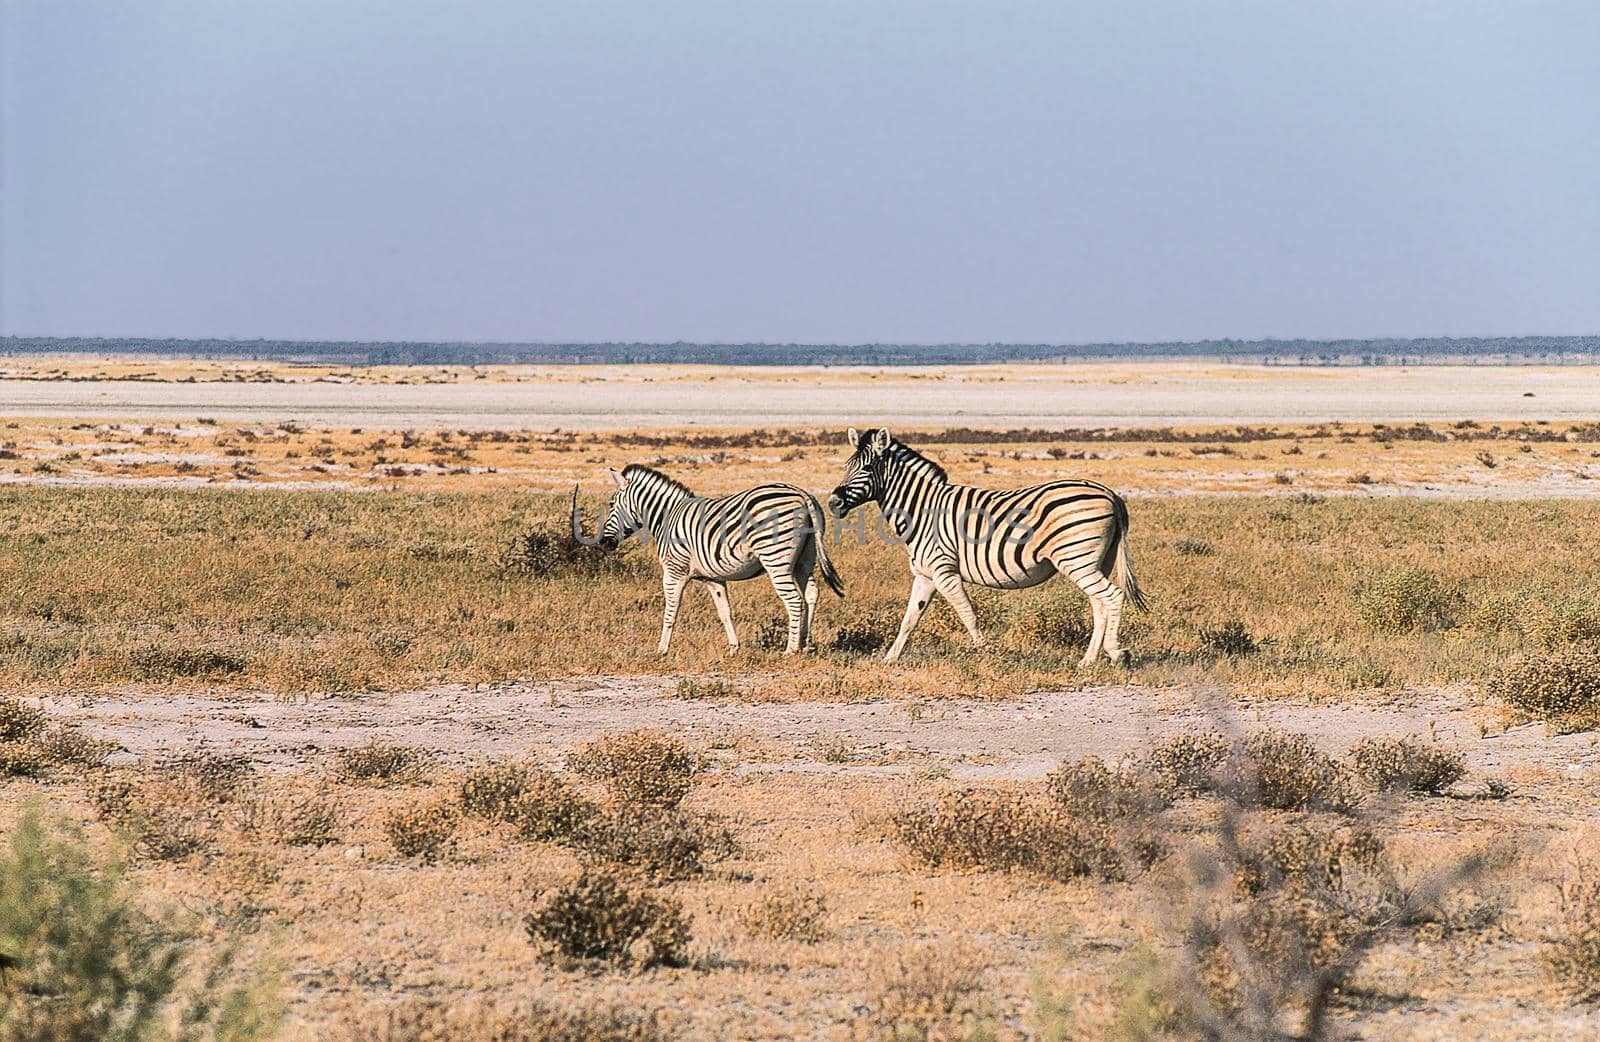 A group of plais zebras (Equus burchellii) near the pan in Etosha National Park, Namibia.